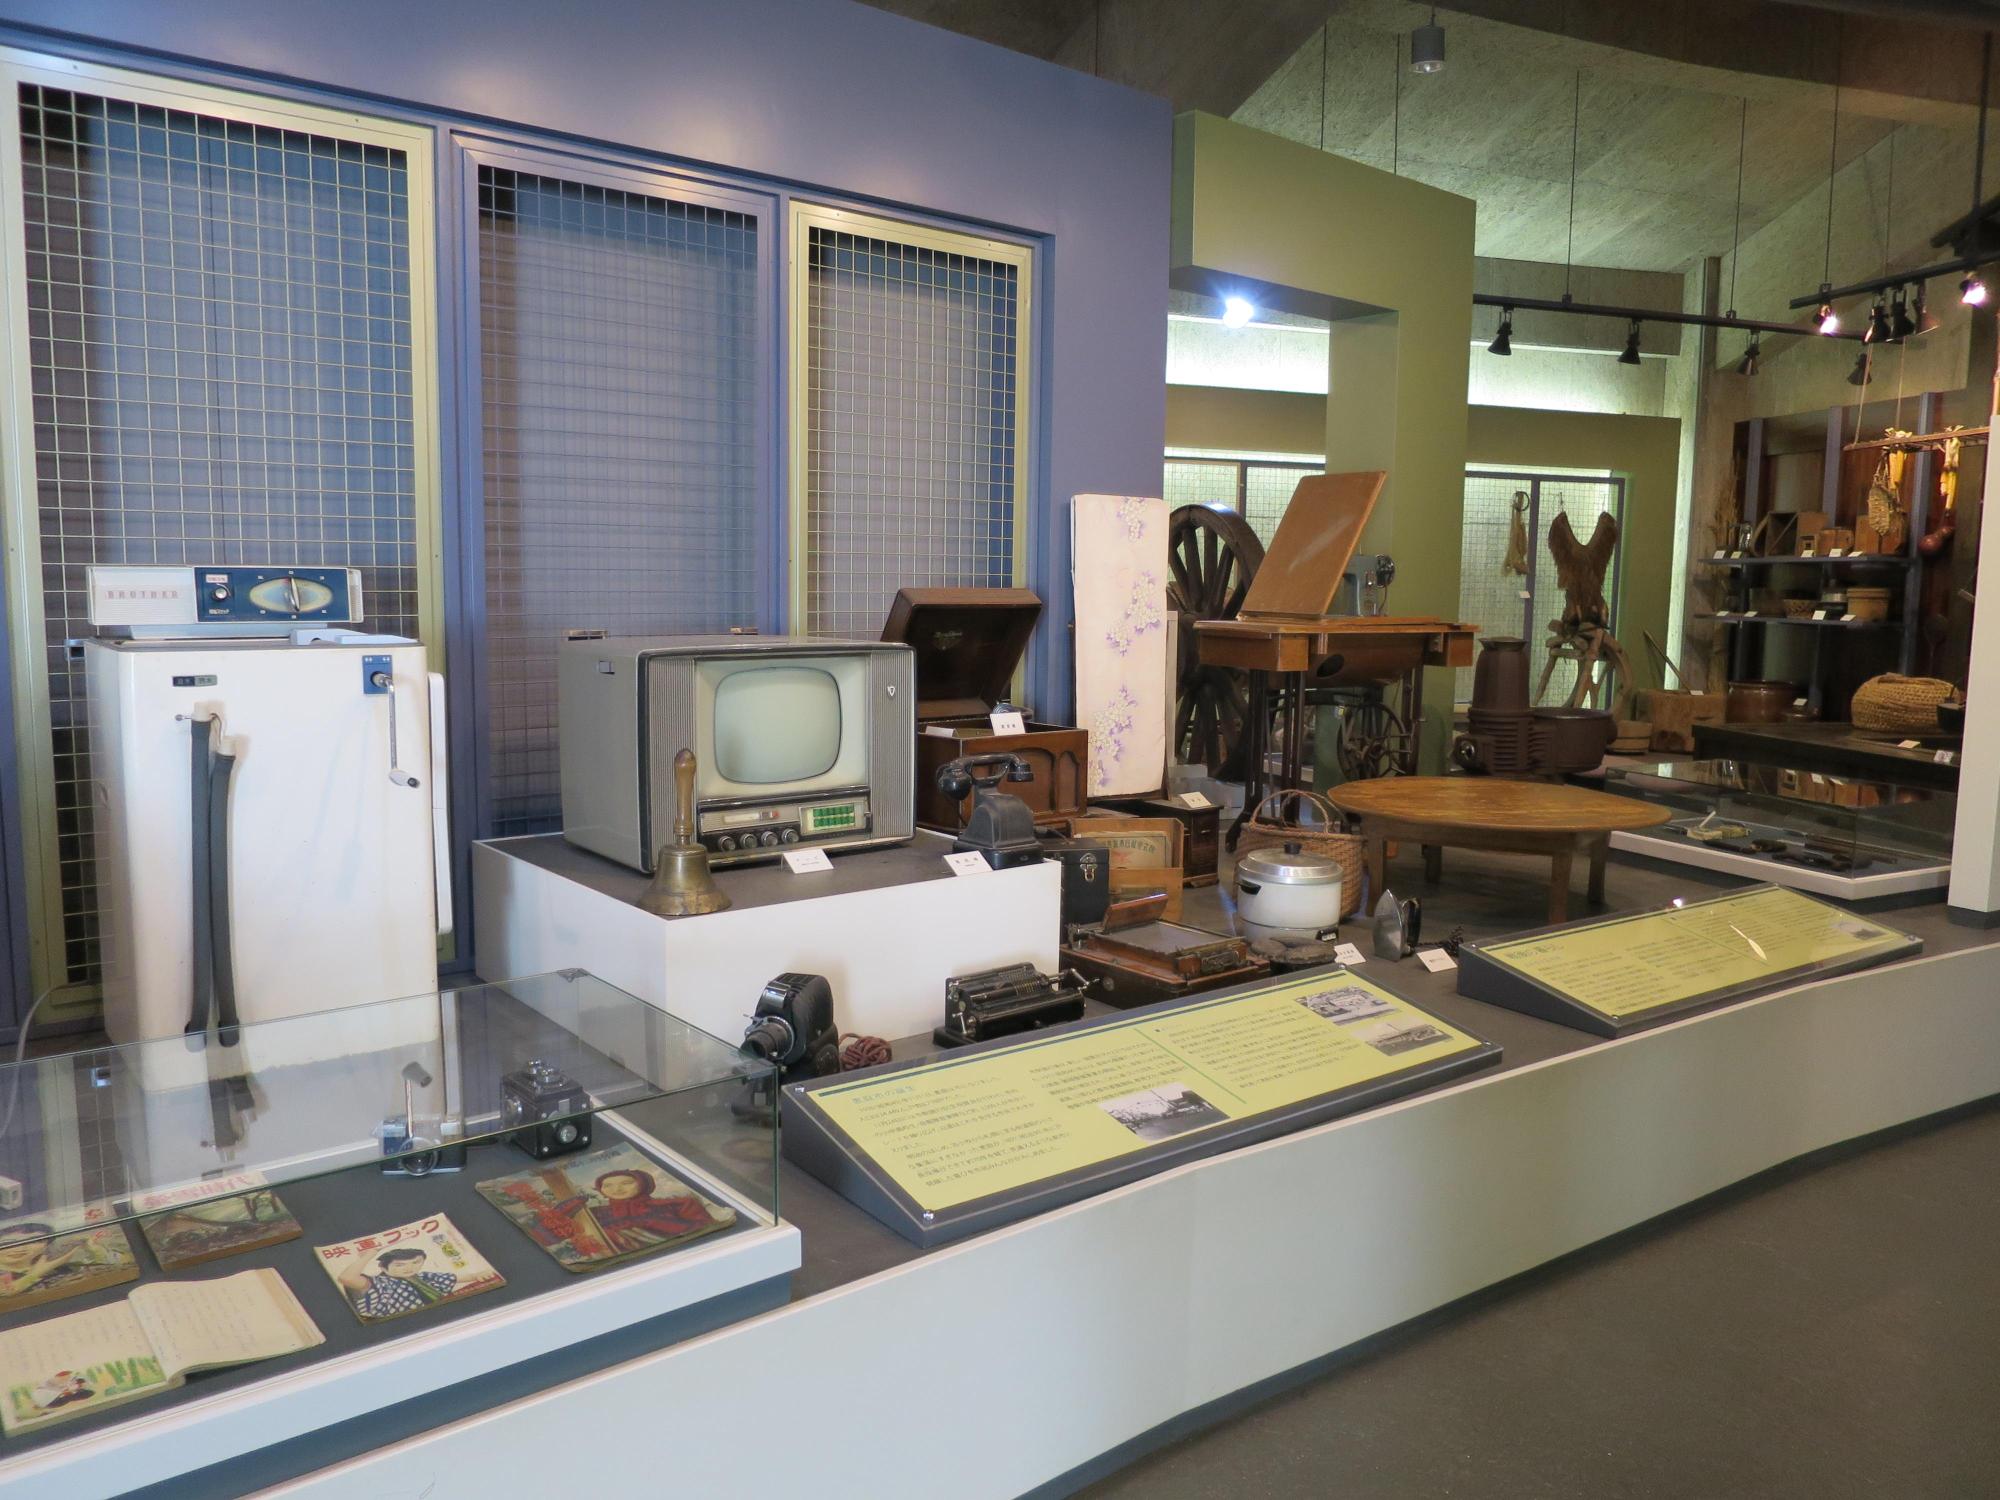 昭和30年代に使用されたテレビや洗濯機などの生活用具が展示された写真